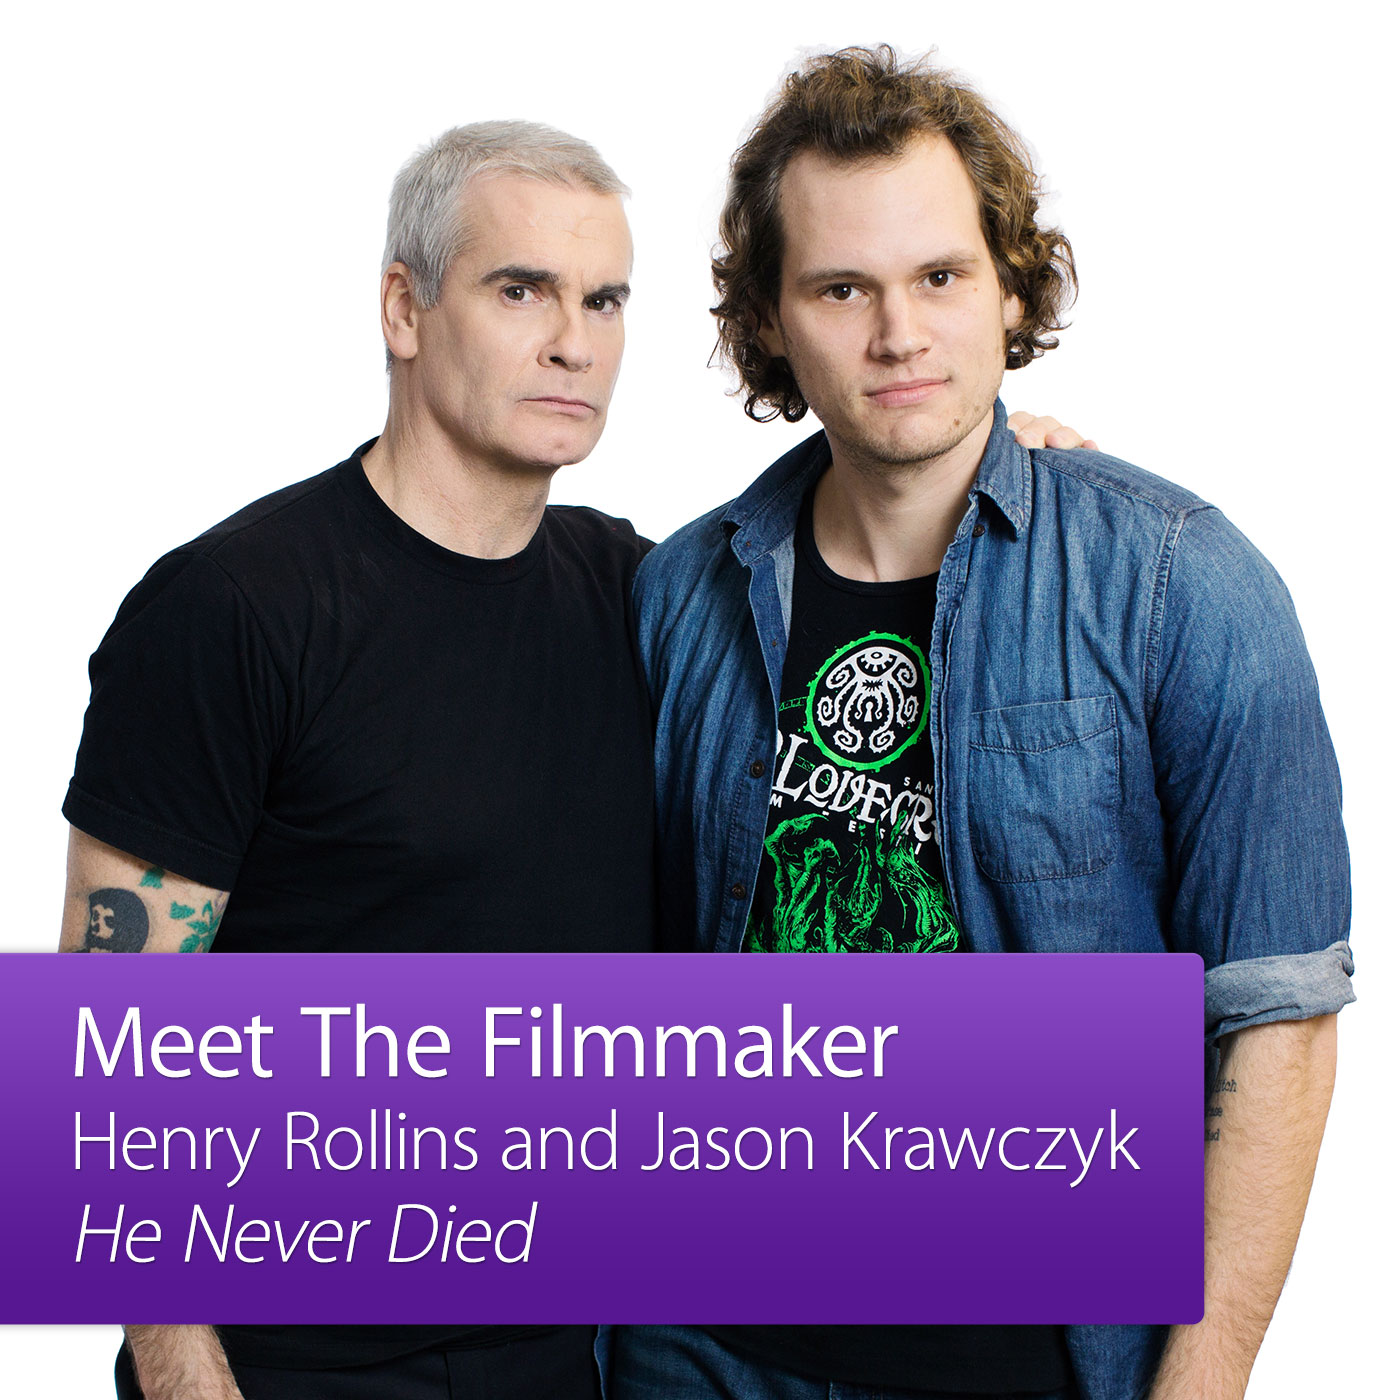 He Never Died: Meet the Filmmaker